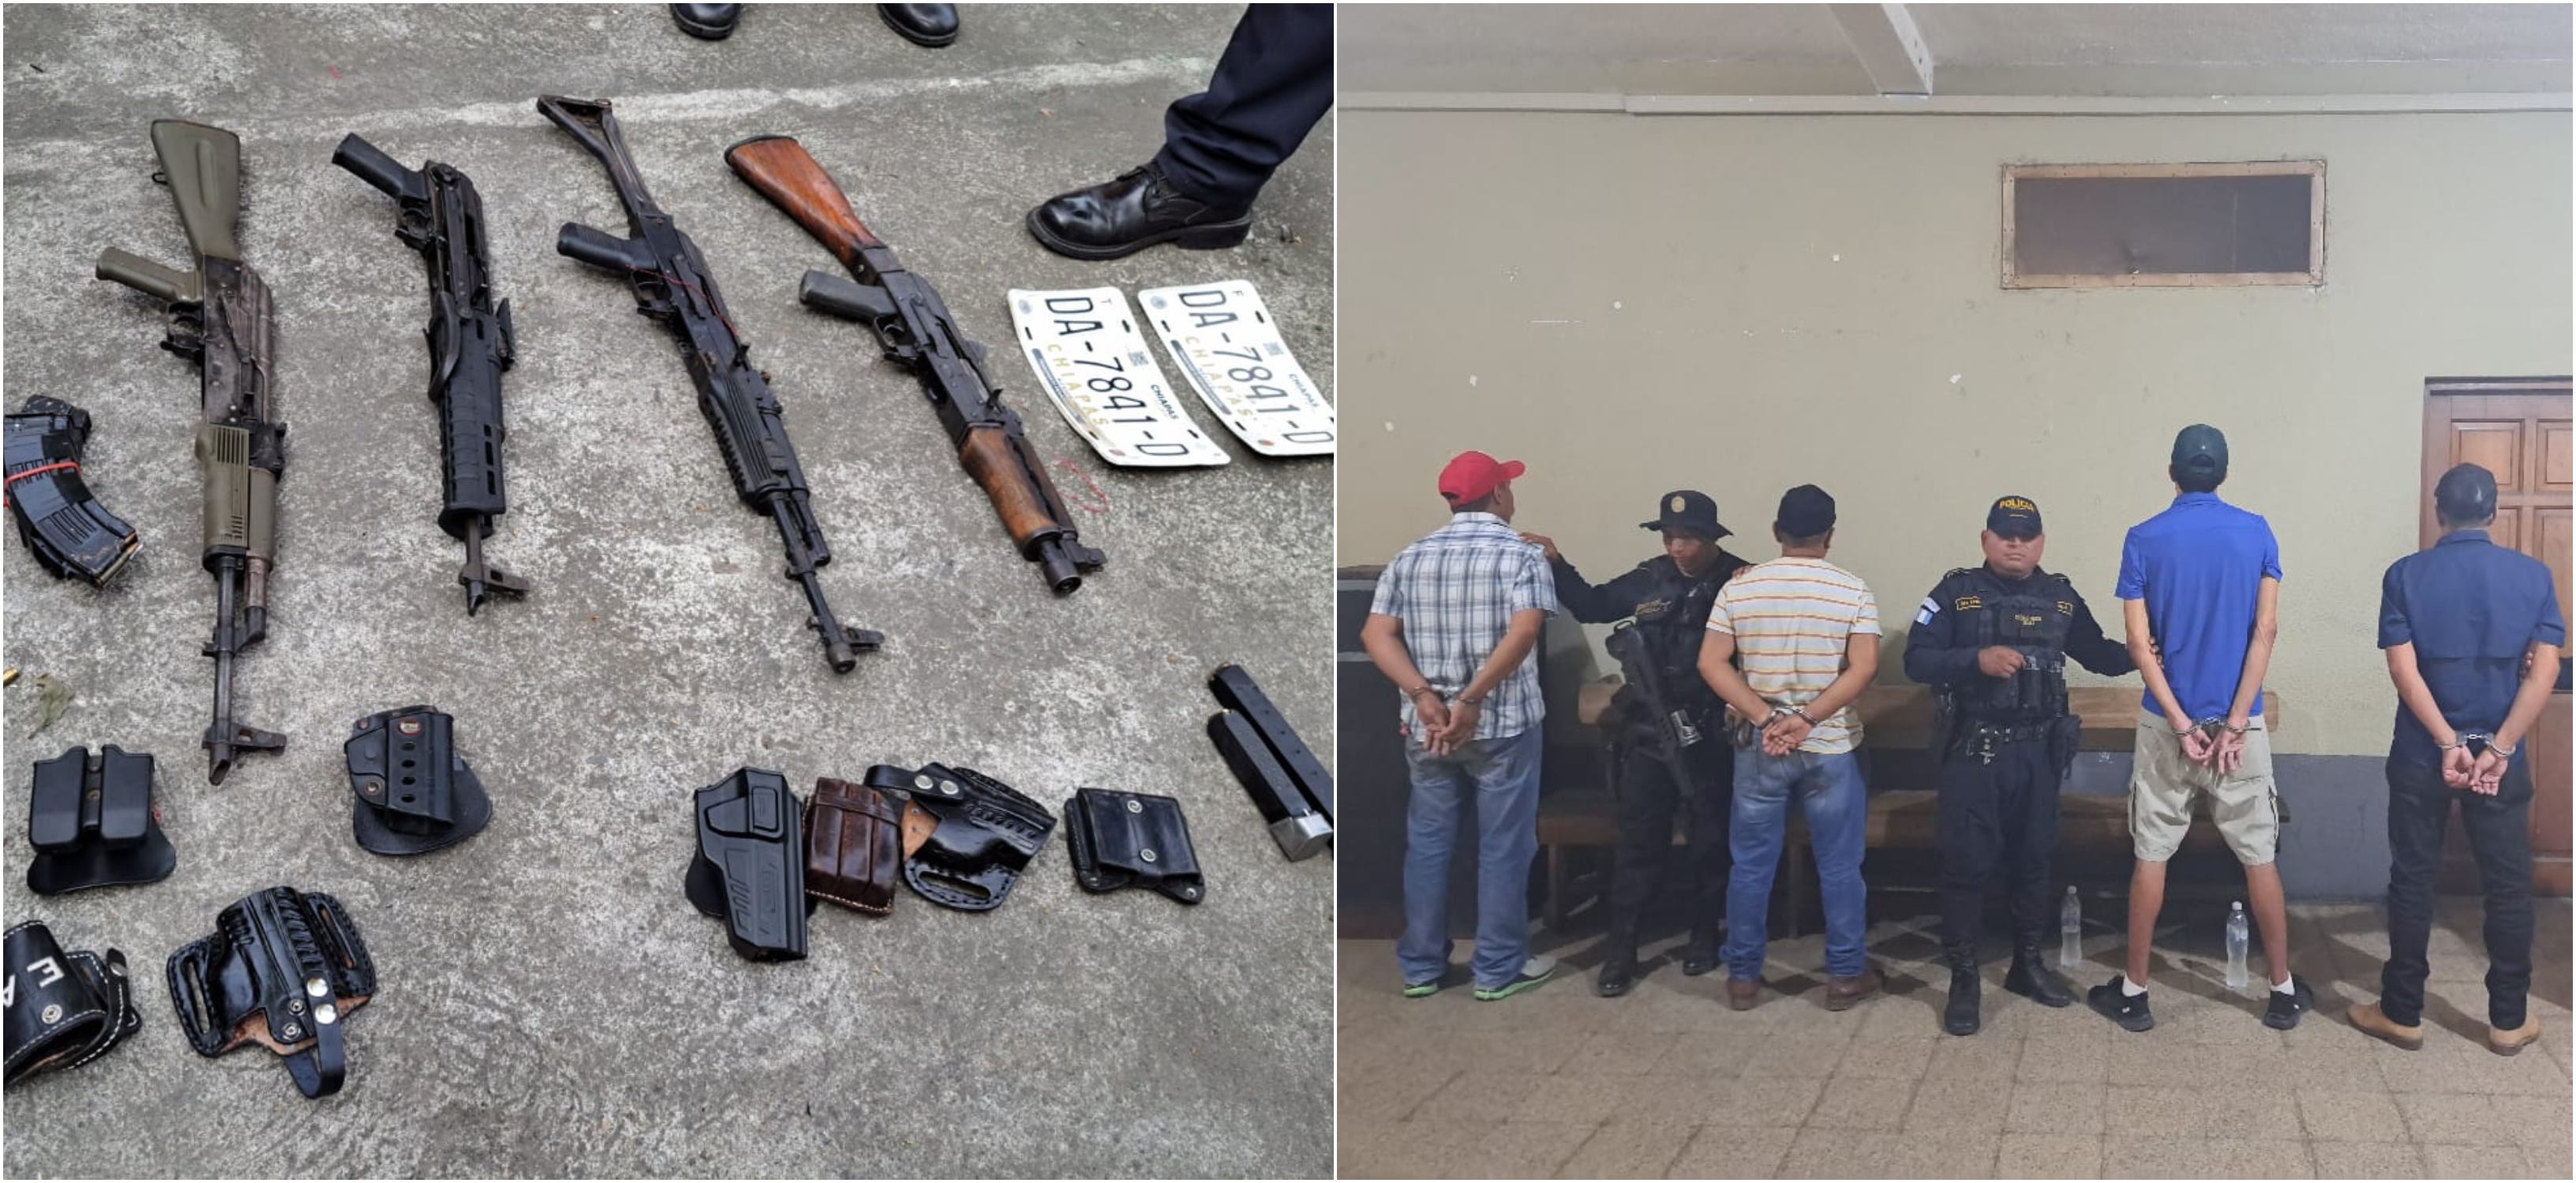 Estos son los fusiles y las placas de circulación de Chiapas que llevaban los cuatro guatemaltecos capturado el 29 de enero pasado en Cuyutenango, Suchitepéquez. (Foto Prensa Libre: PNC).